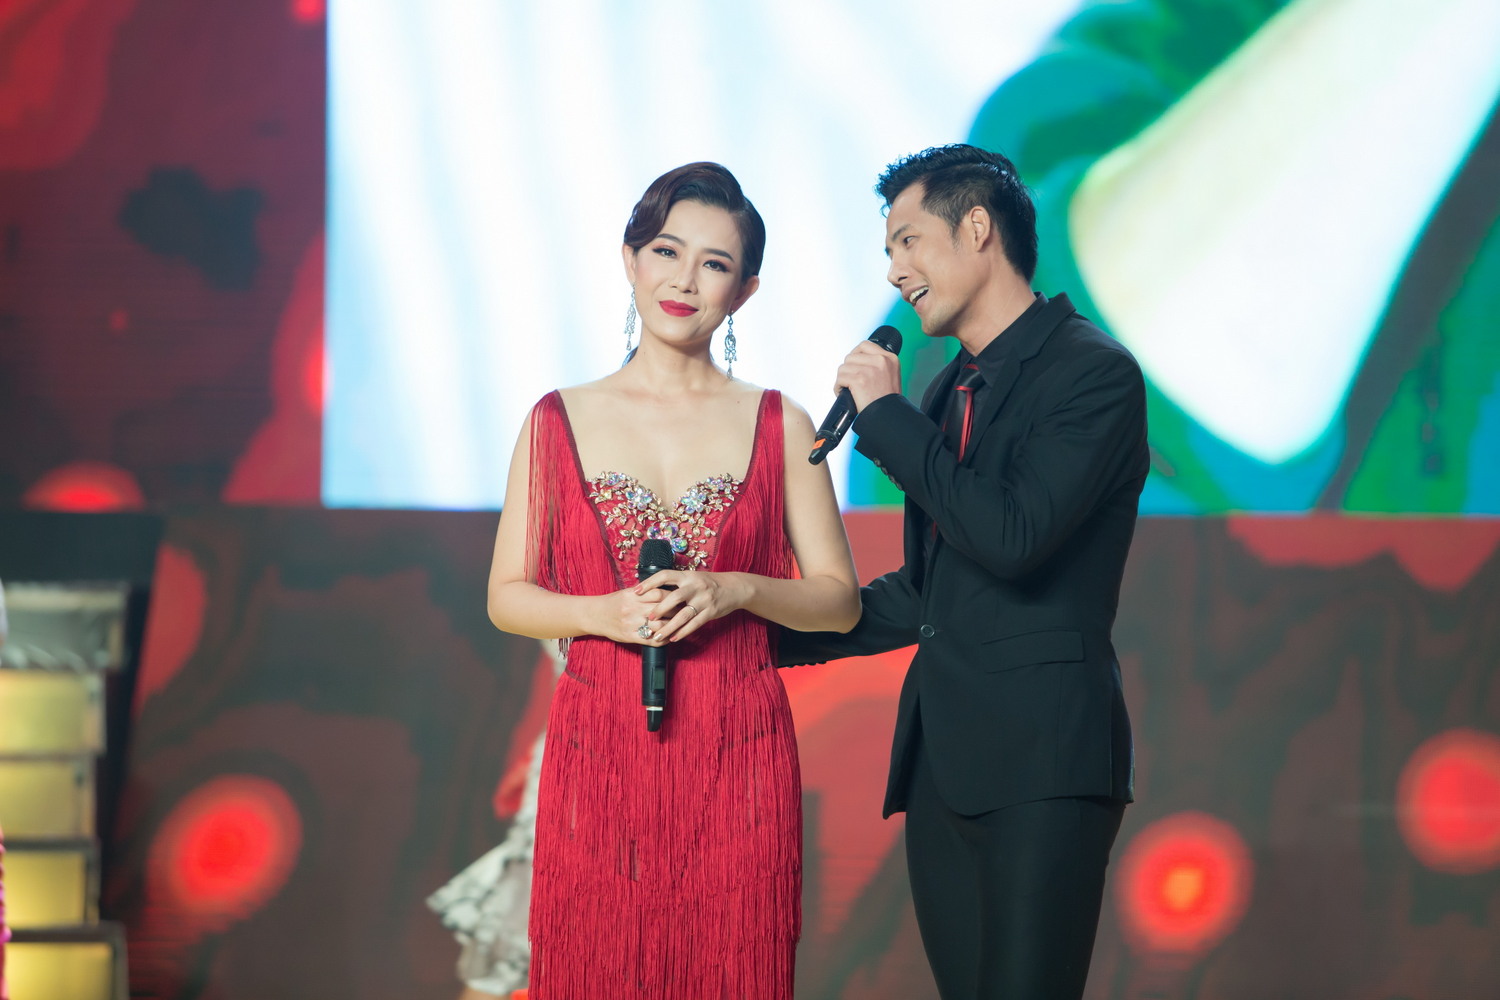 Hội ngộ khán giả trong đêm chung kết xếp hạng Tình Bolero 2017 còn có các thí sinh Thanh Thức, Hoa hậu ảnh 2000 Yến Nhi, MC Quốc Bình, diễn viên Lý Hương.